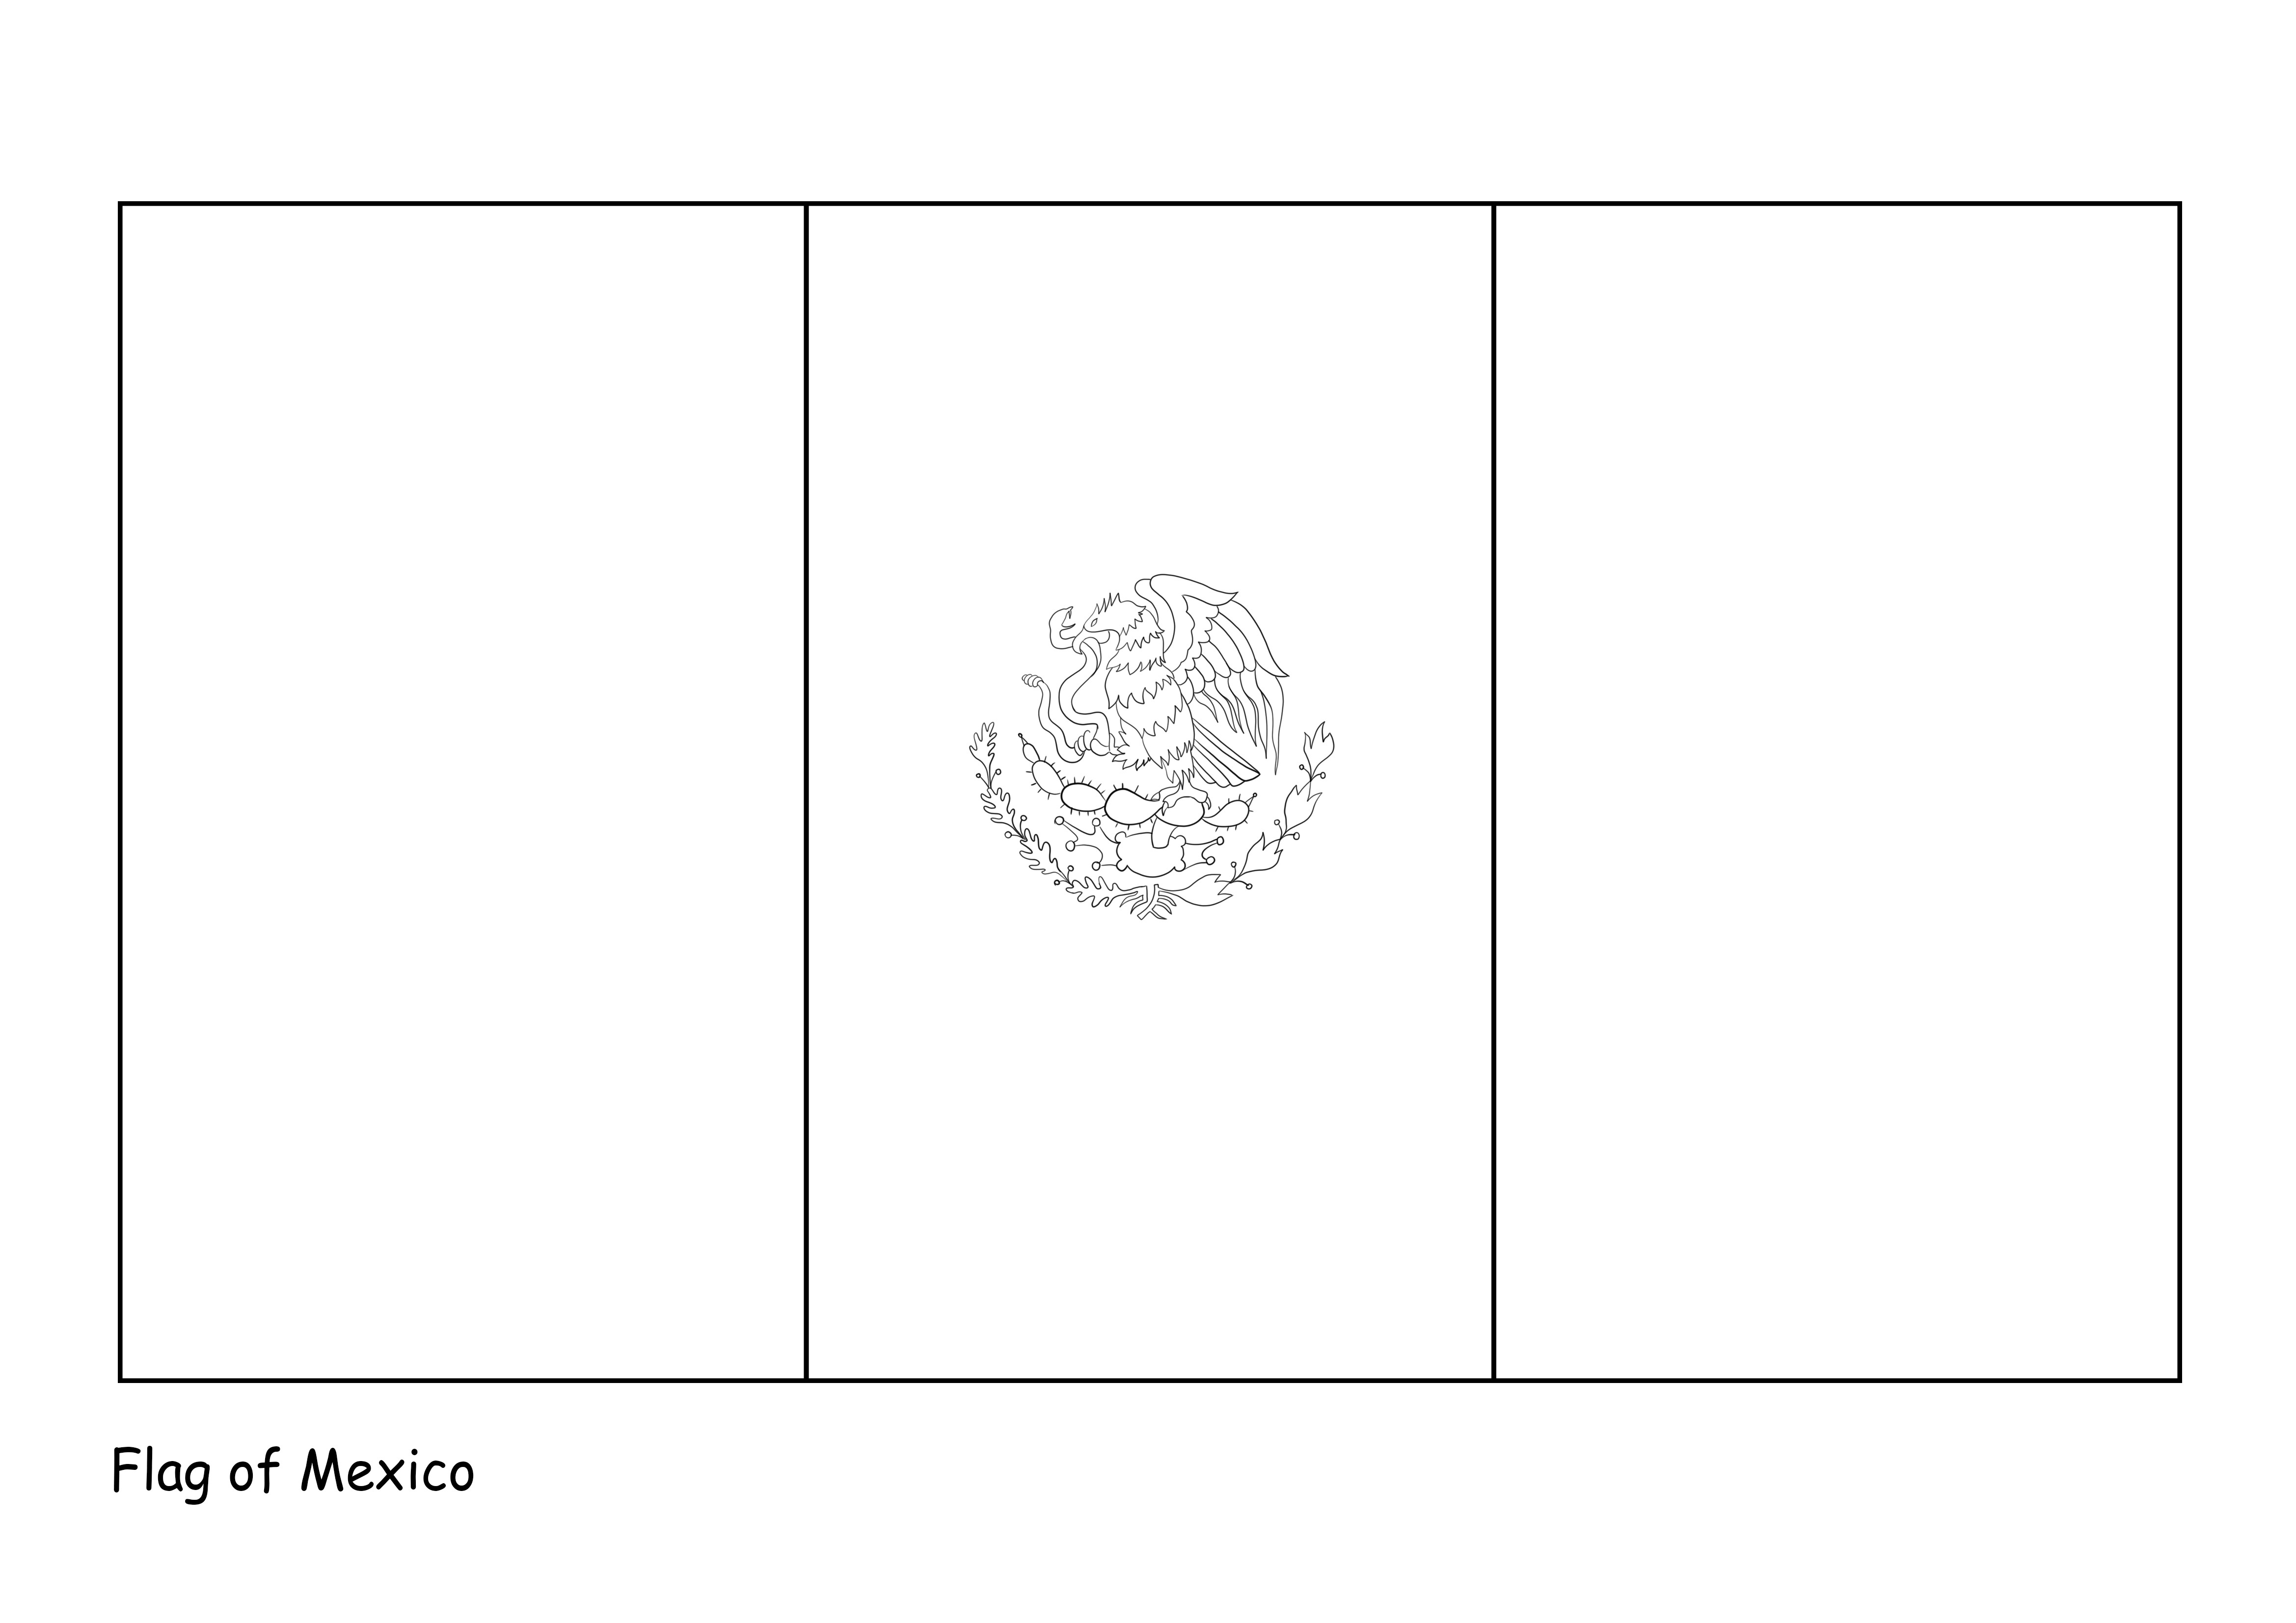 Flaga Meksyku do pobrania lub wydrukowania za darmo obraz